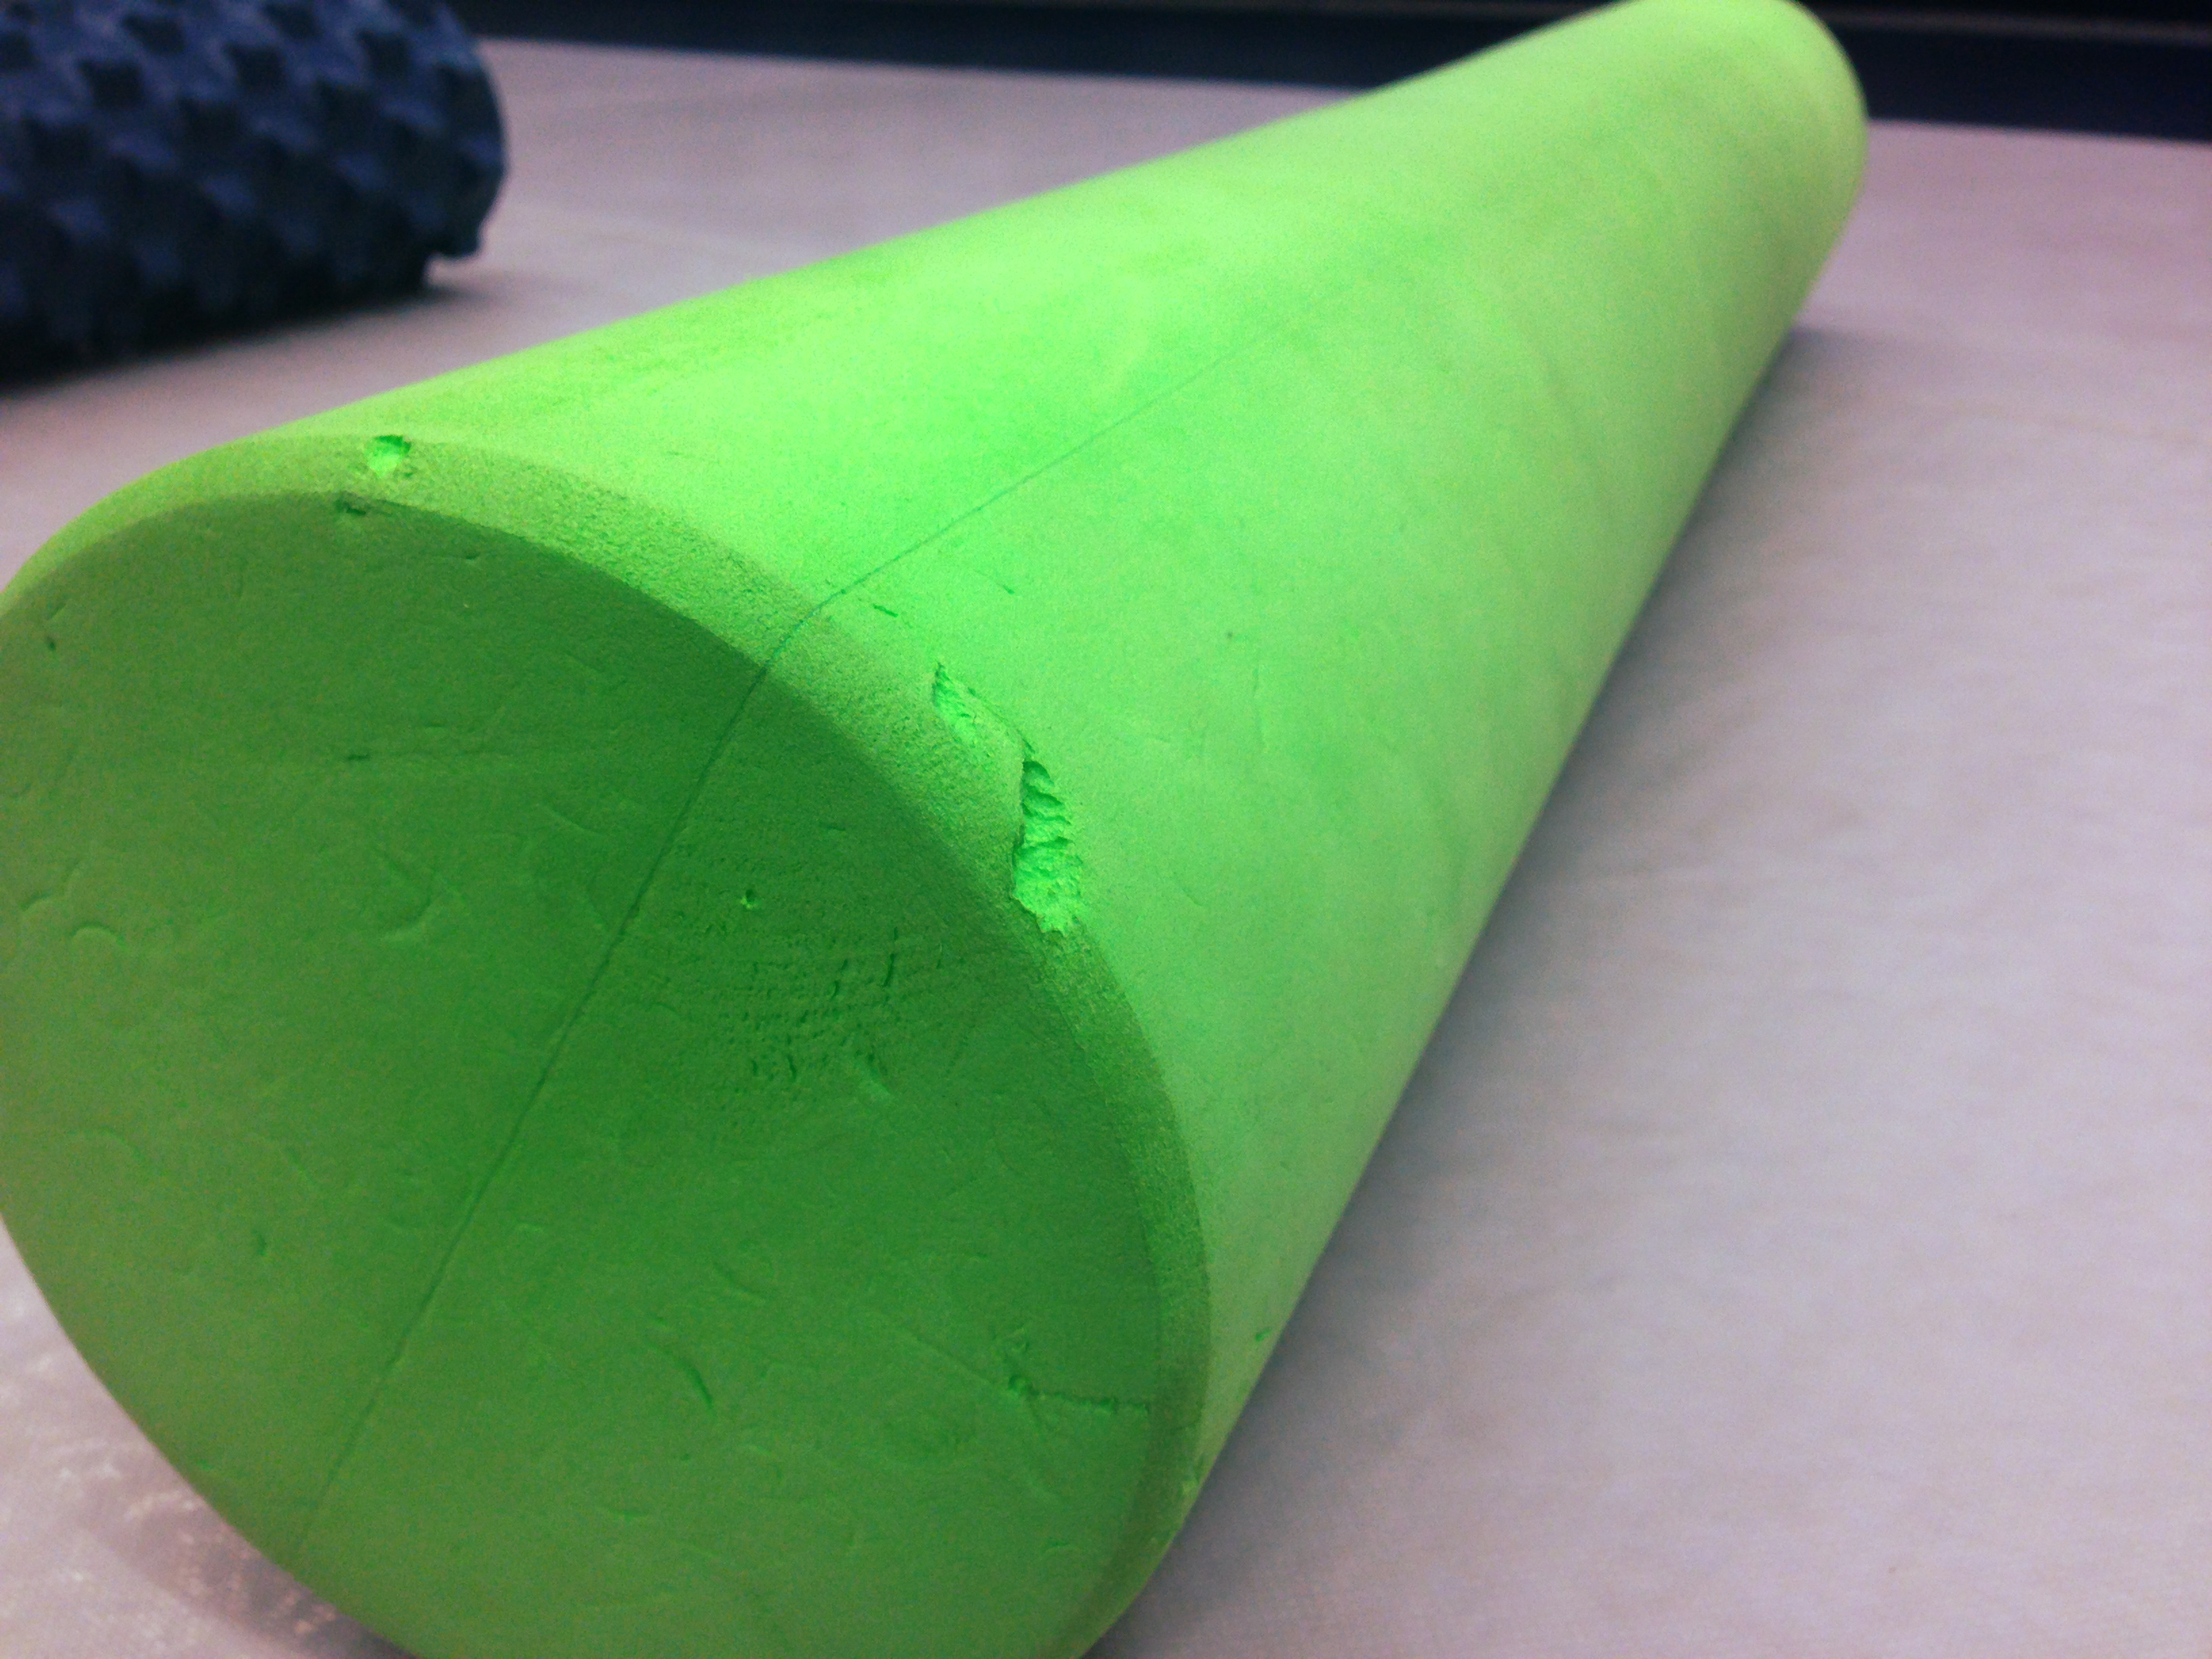 reebok green foam roller